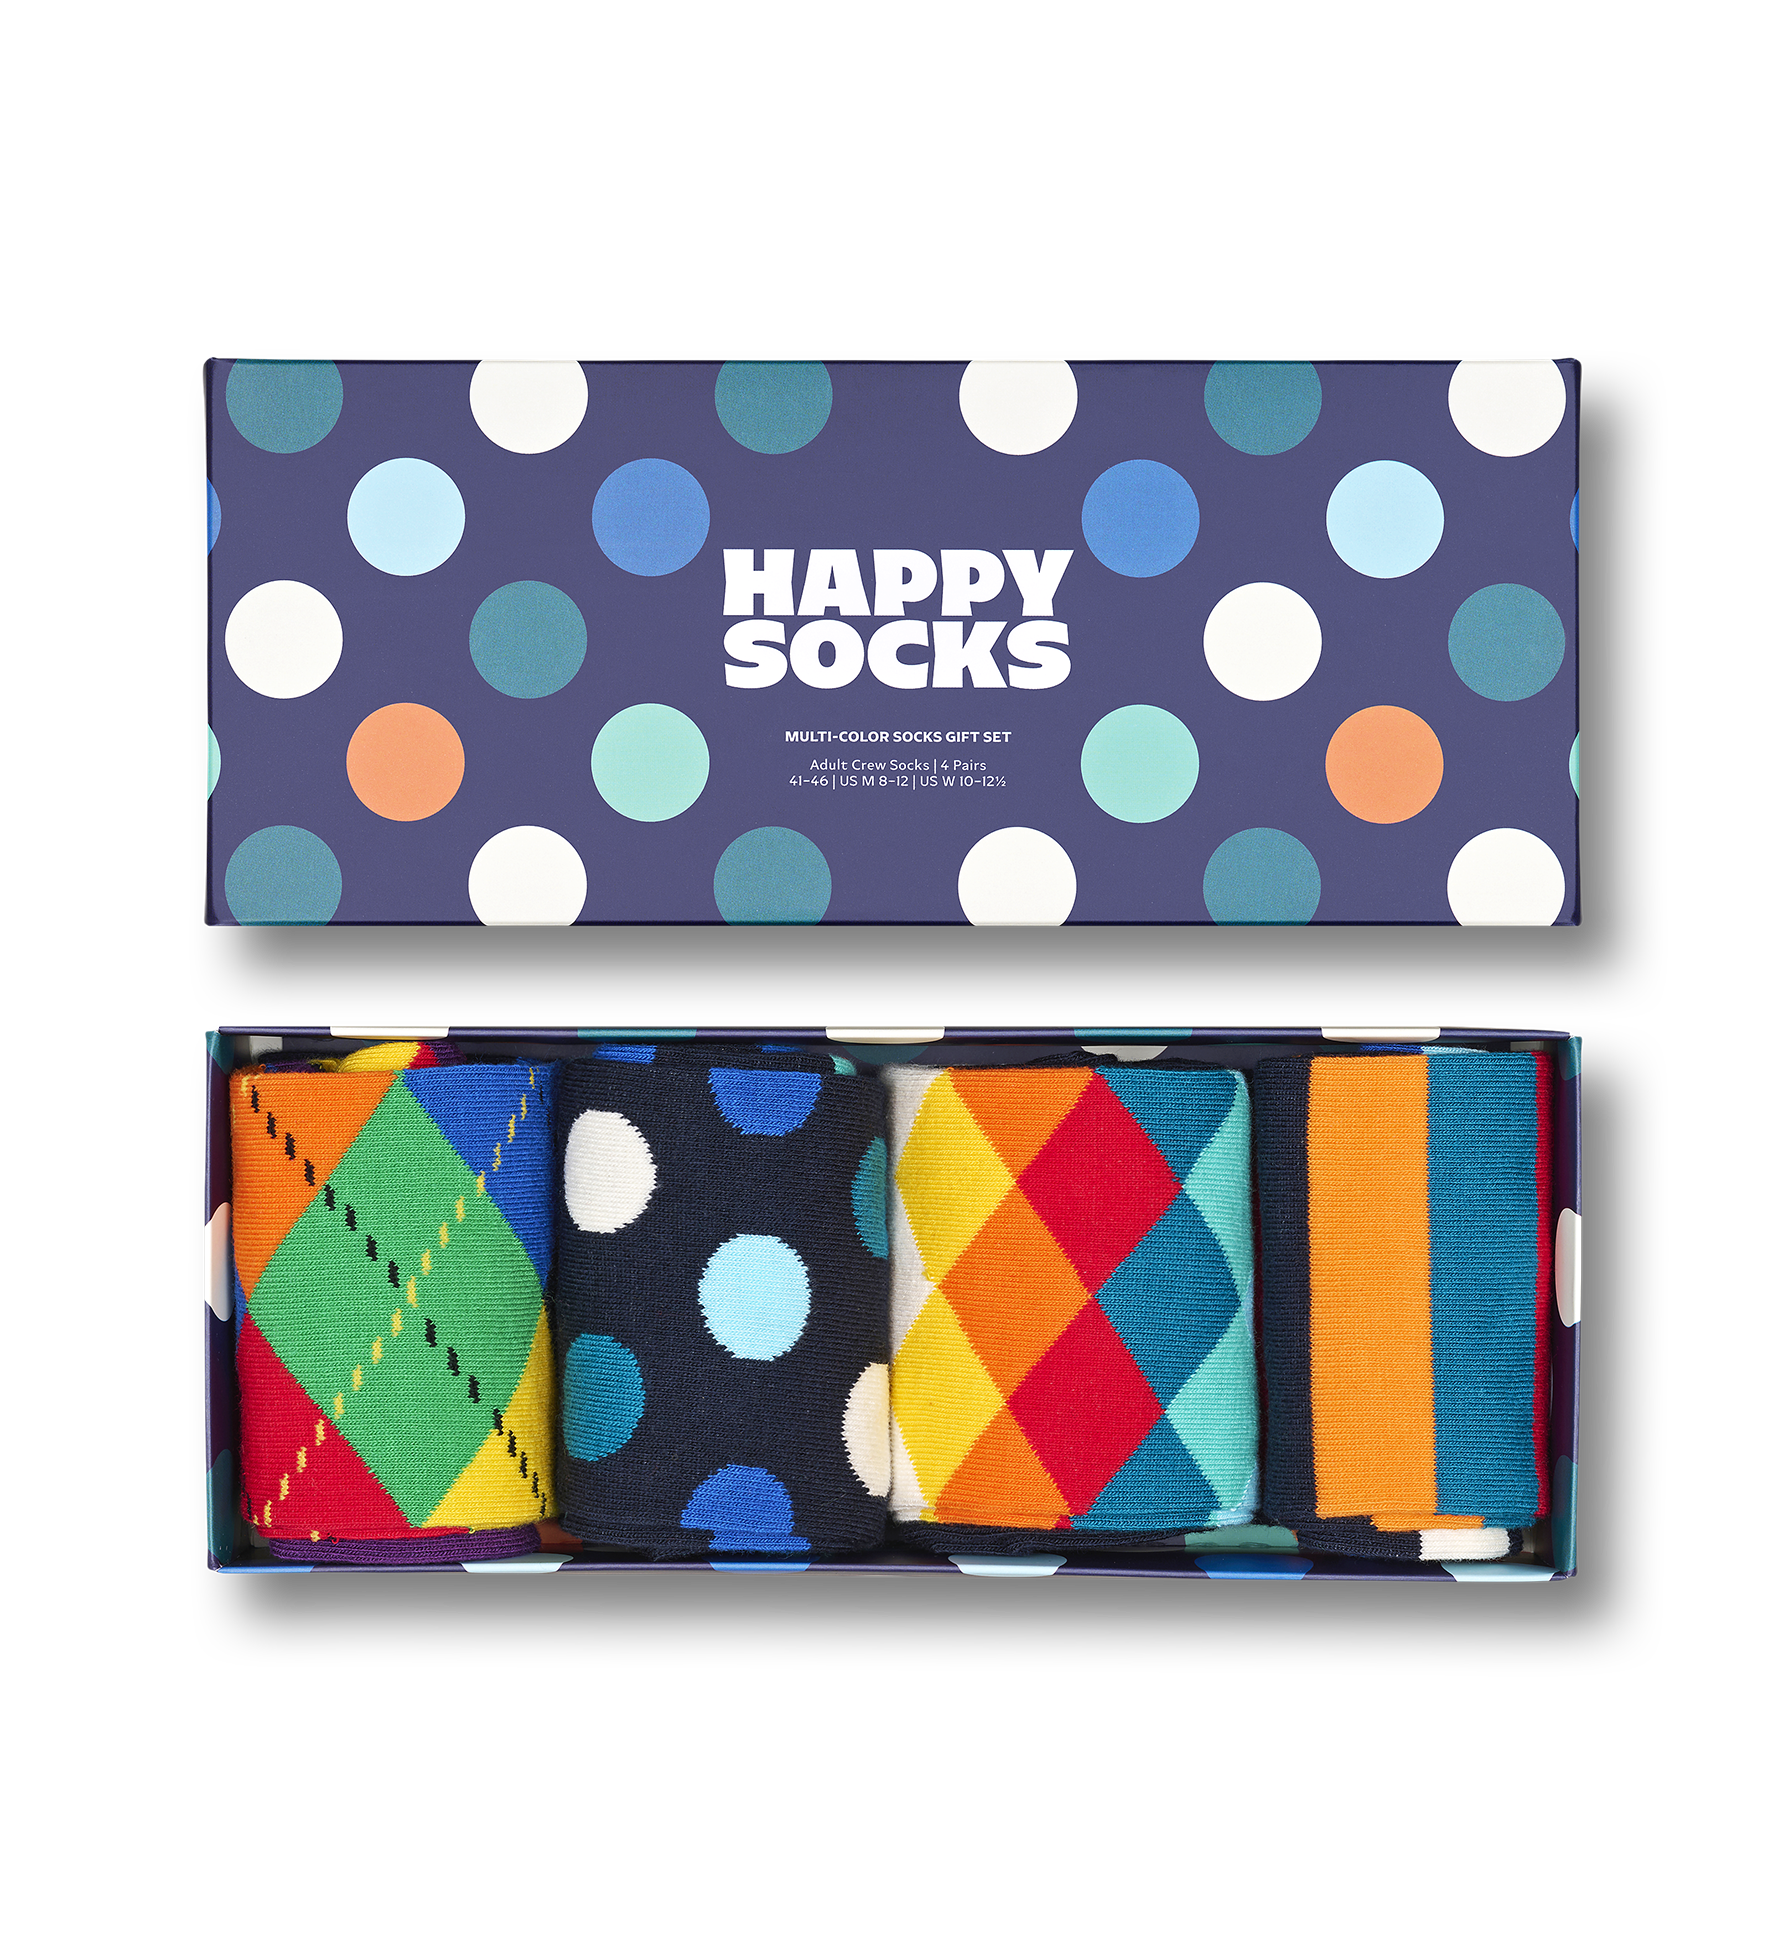 Navy 4-Pack Multi-Color Crew Socks Gift Set